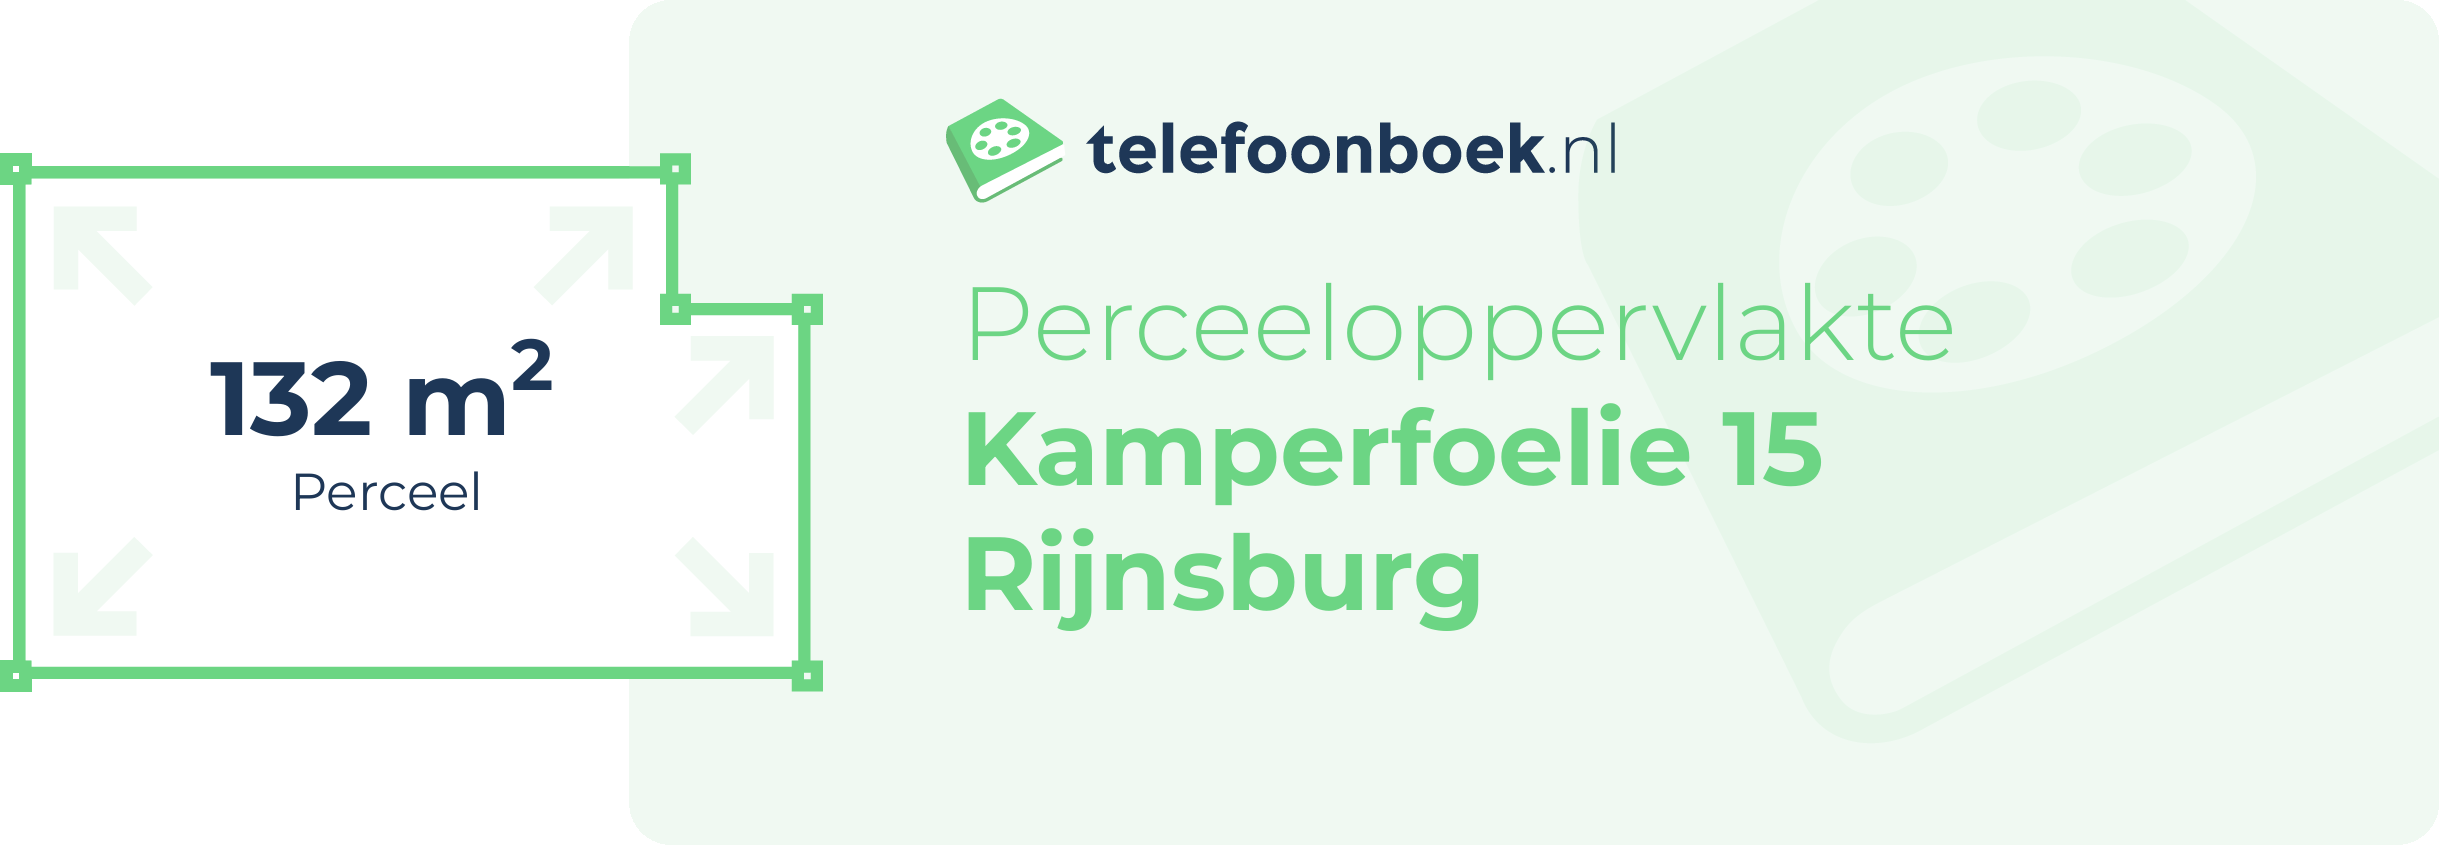 Perceeloppervlakte Kamperfoelie 15 Rijnsburg